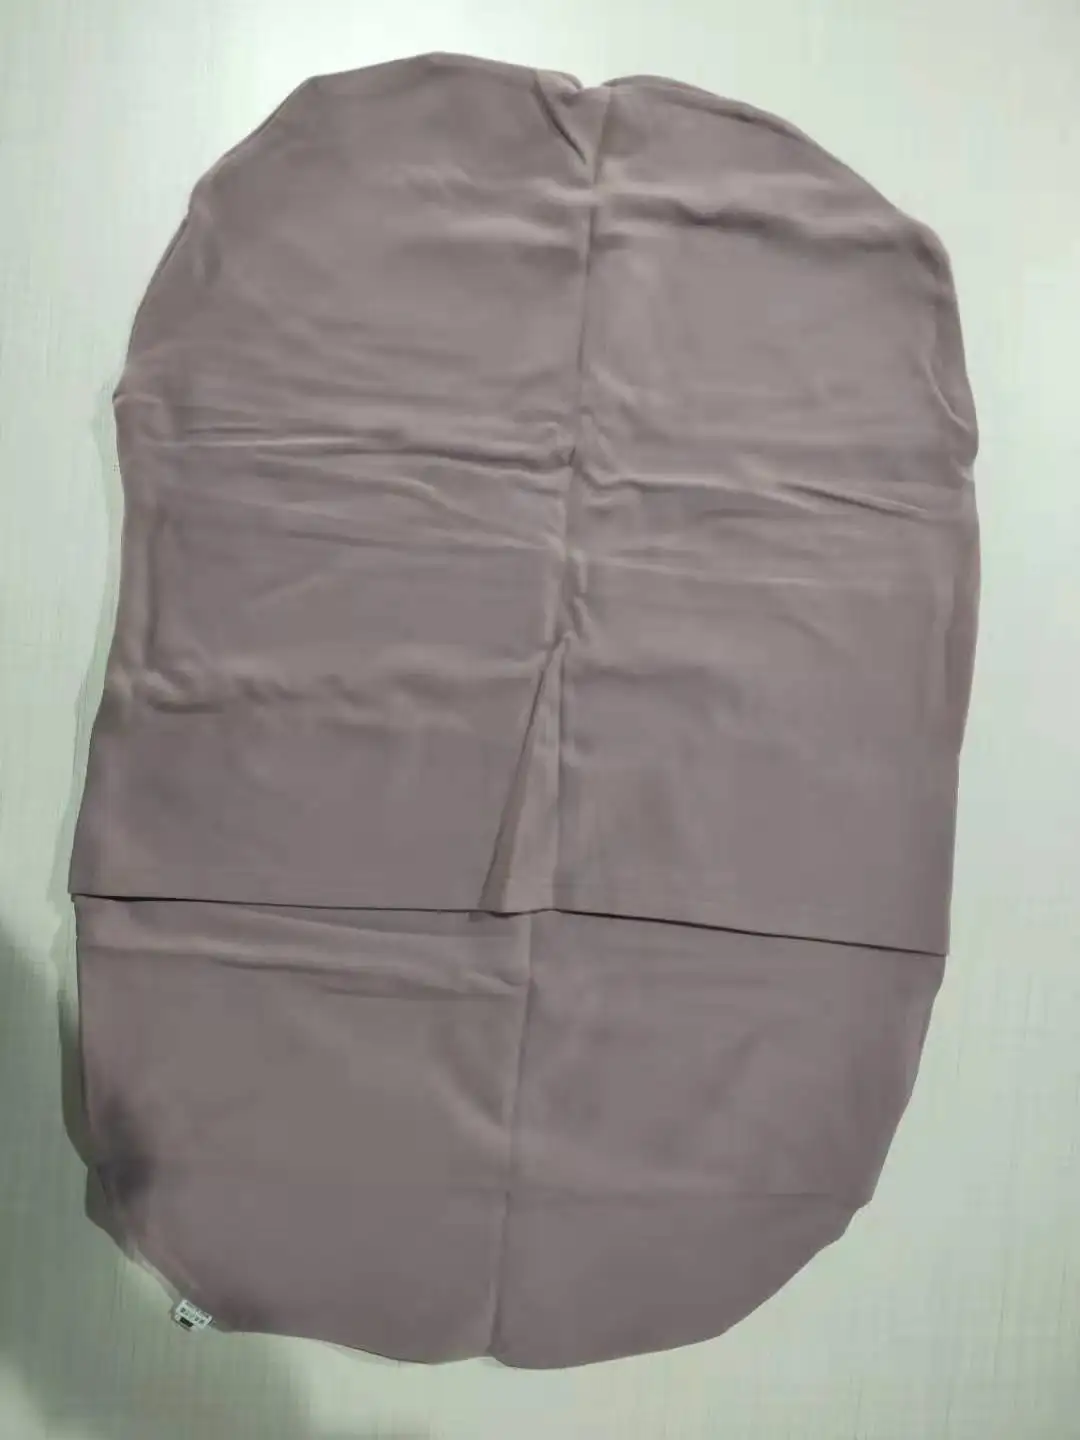 75*45 см портативная детская кроватка детское гнездо для новорожденного лежака детская хлопковая Колыбель для новорожденного бамперная кровать для путешествий Babynest - Цвет: Purple Cover